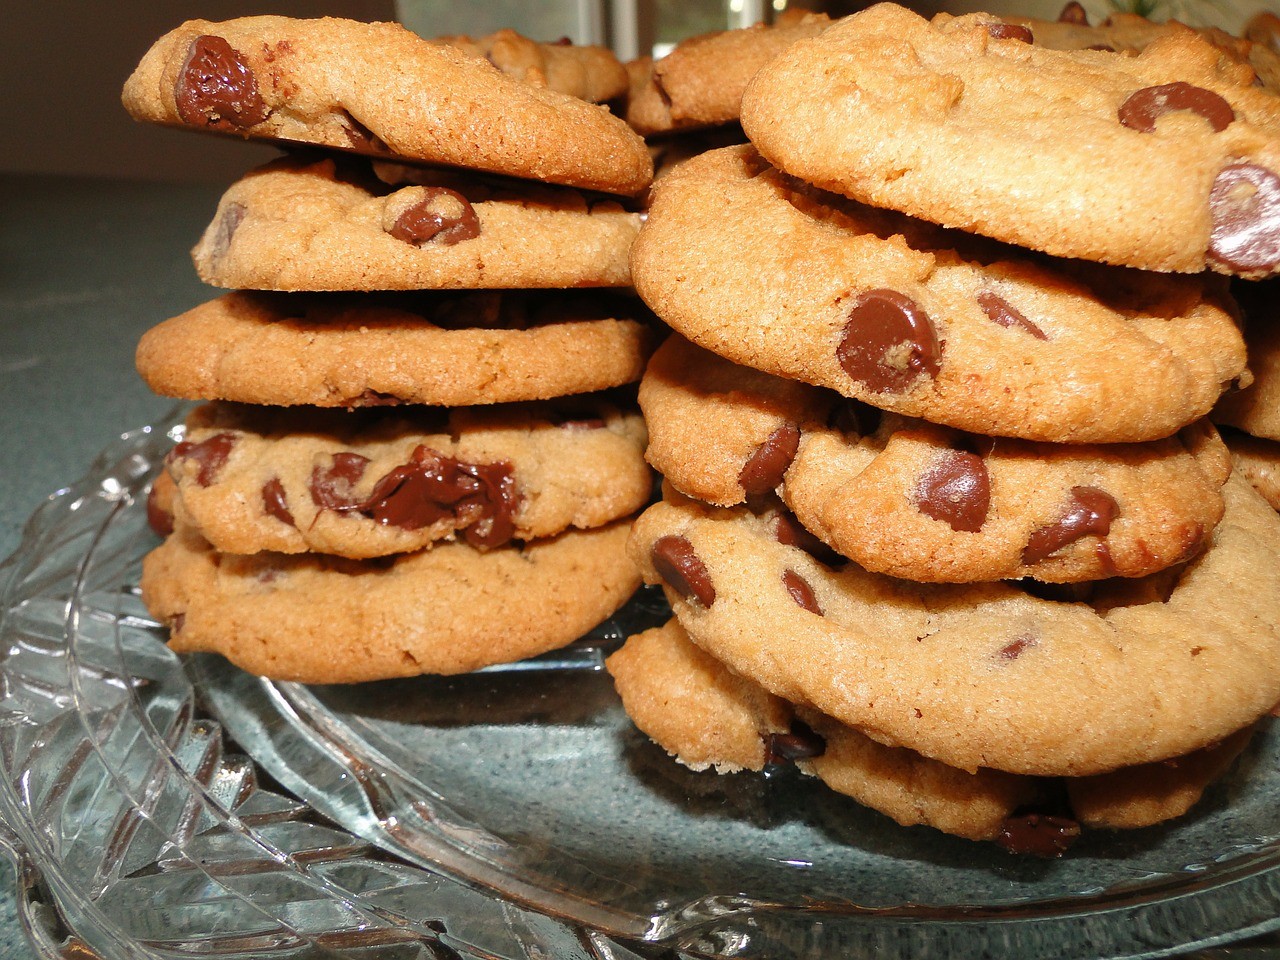 Μπισκοτάκια με σοκολάτα (chocolate chips cookies)